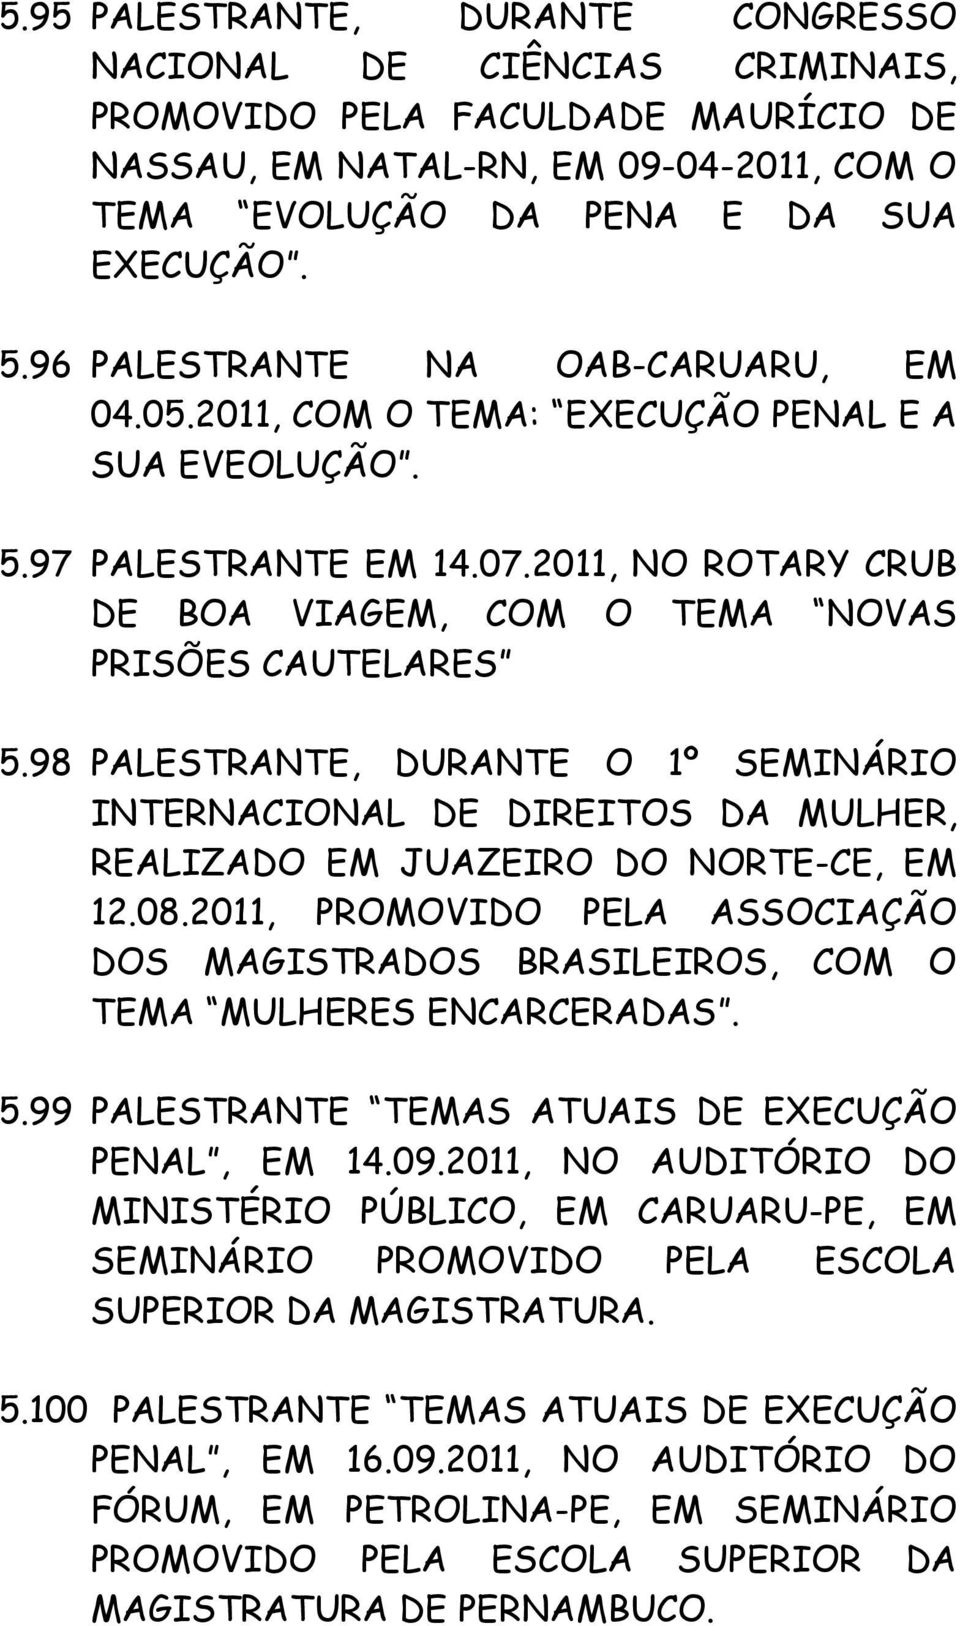 98 PALESTRANTE, DURANTE O 1º SEMINÁRIO INTERNACIONAL DE DIREITOS DA MULHER, REALIZADO EM JUAZEIRO DO NORTE-CE, EM 12.08.